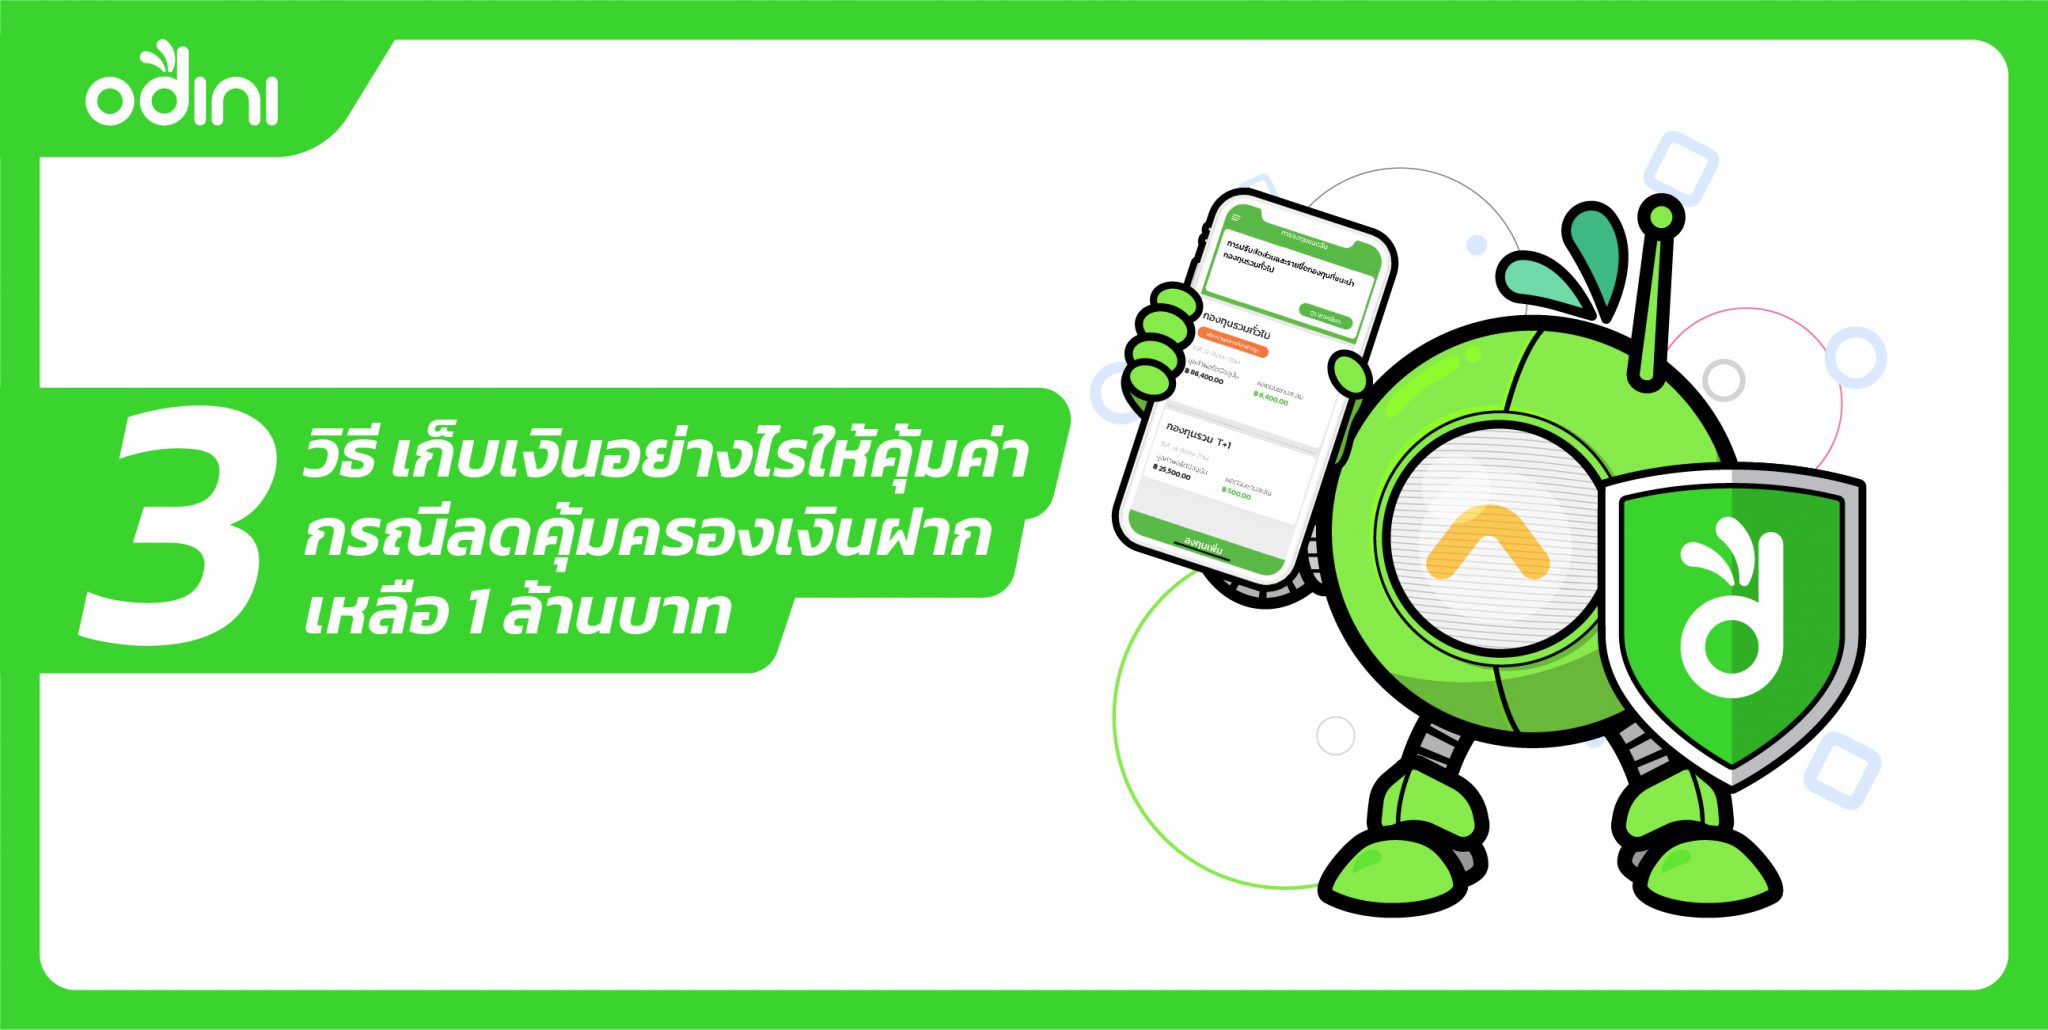 3 วิธี เก็บเงินอย่างไรให้คุ้มค่า กรณีลดคุ้มครองเงินฝากเหลือ 1 ล้านบาท –  Odini ลงทุนกองทุนอัตโนมัติด้วย Robo-Advisor แอปแรกในไทย